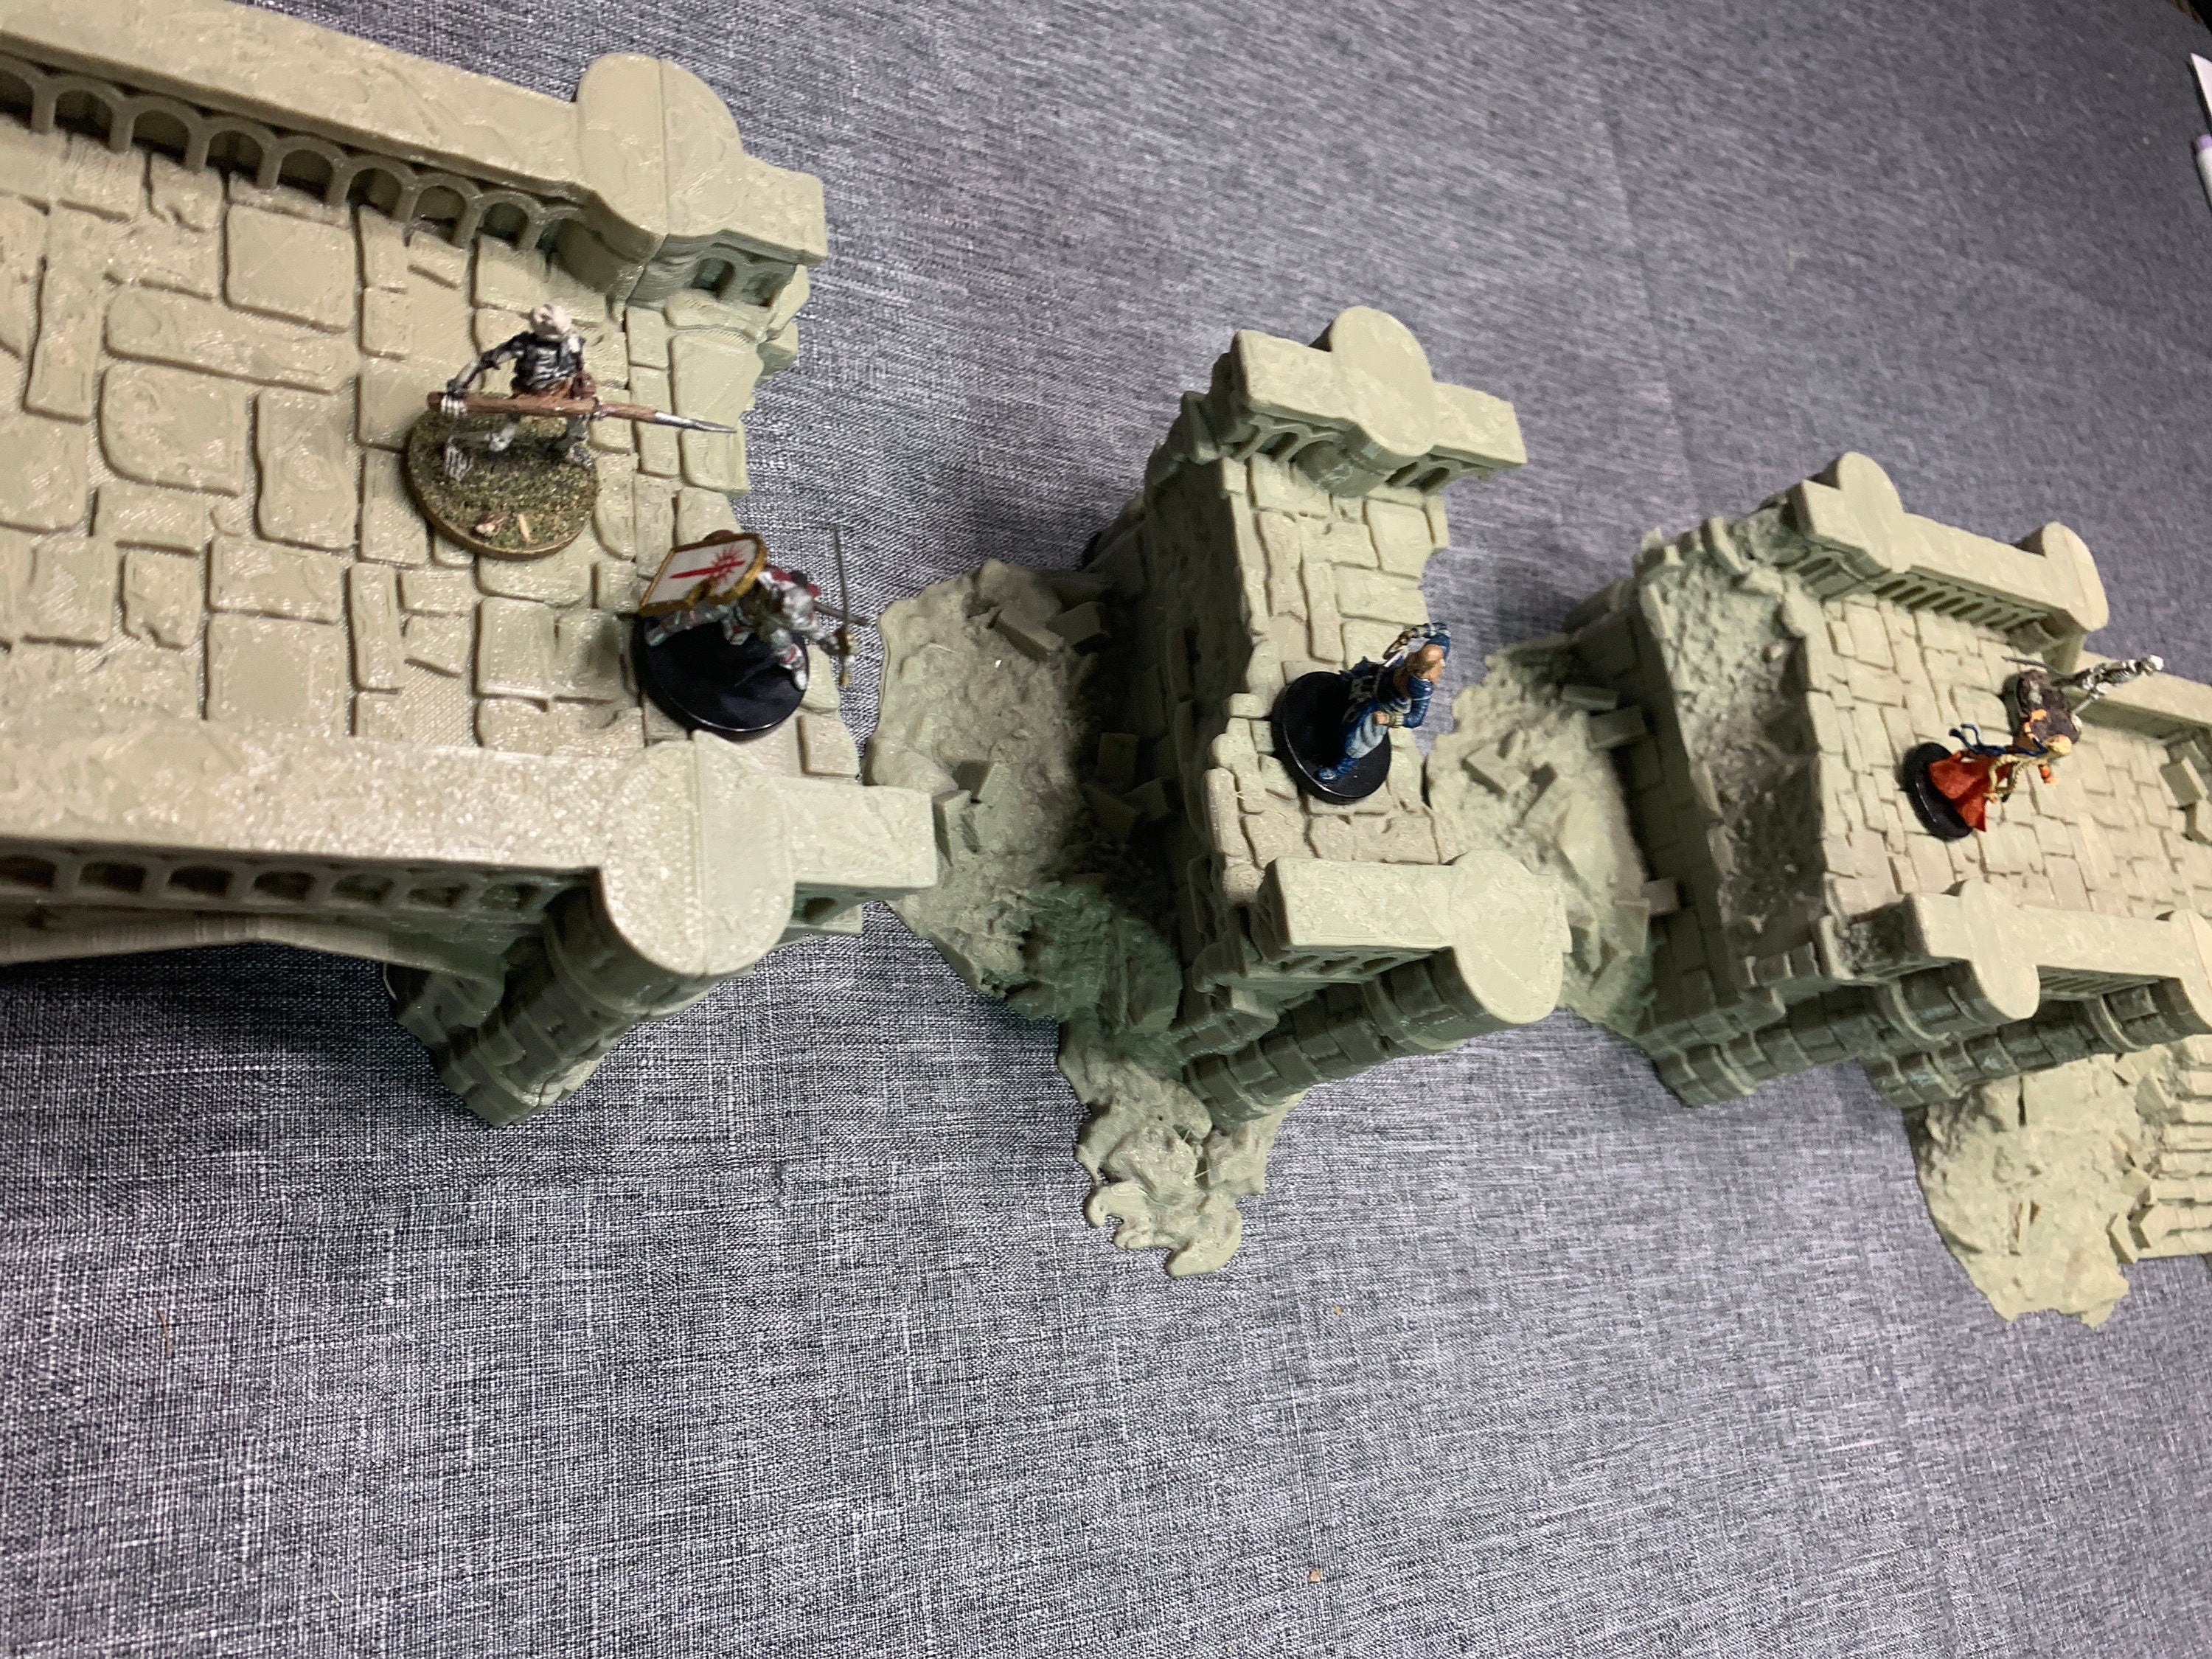 Arkenfel Modular Ruined Bridge 2 / Dark Realms Terrain / RPG and Wargame 3d Printed Tabletop Terrain / Licensed Printer